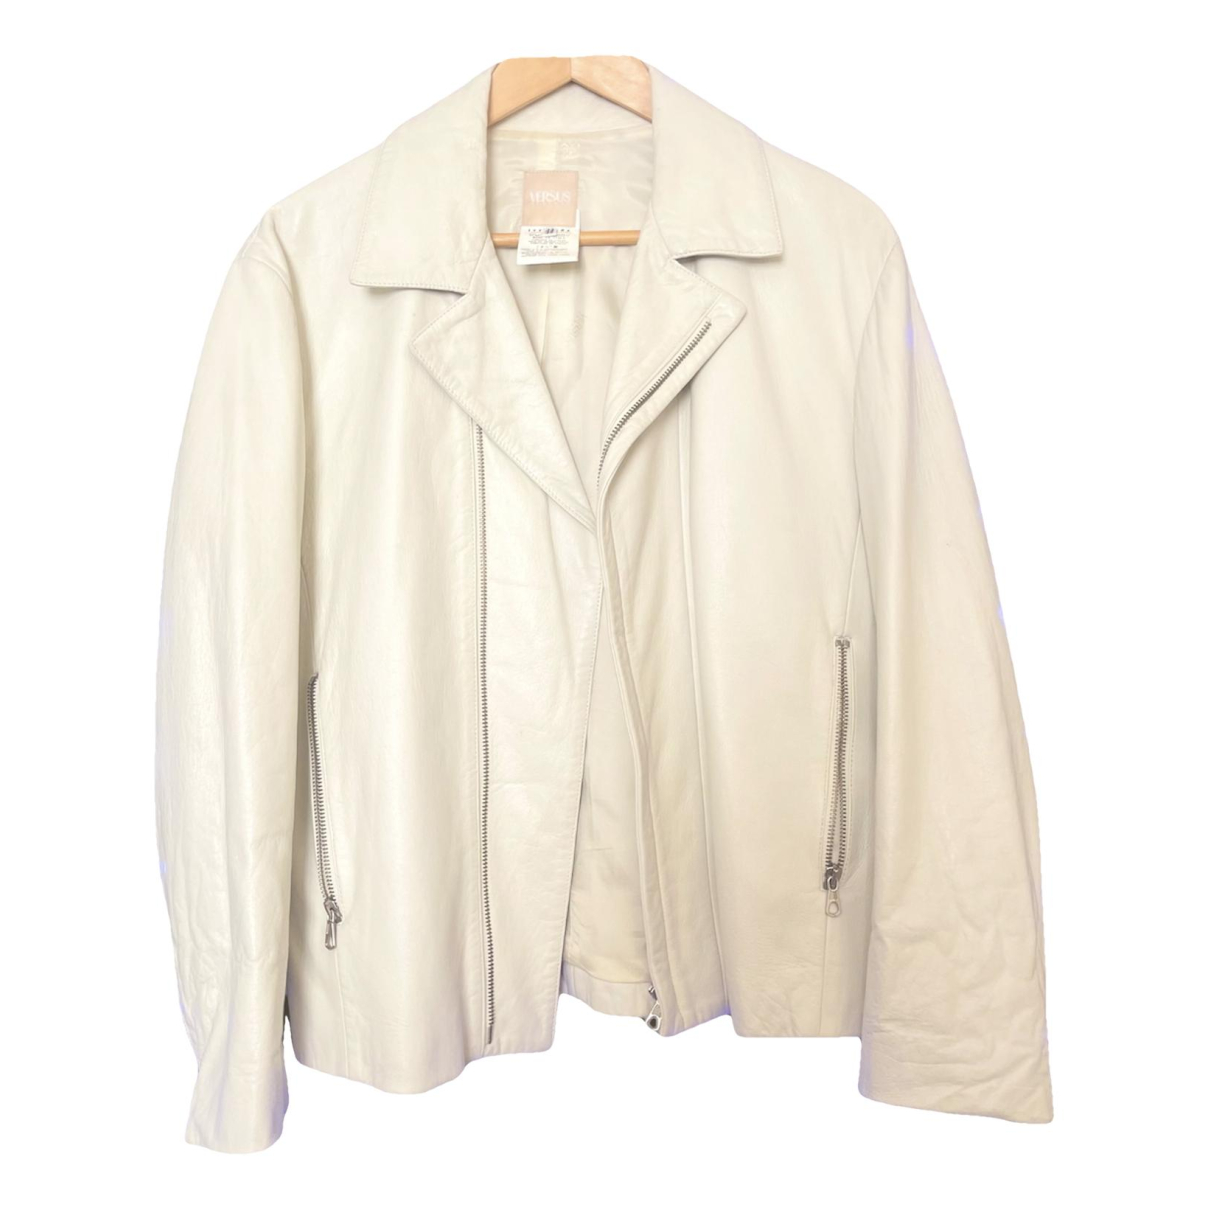 White Leather Jacket